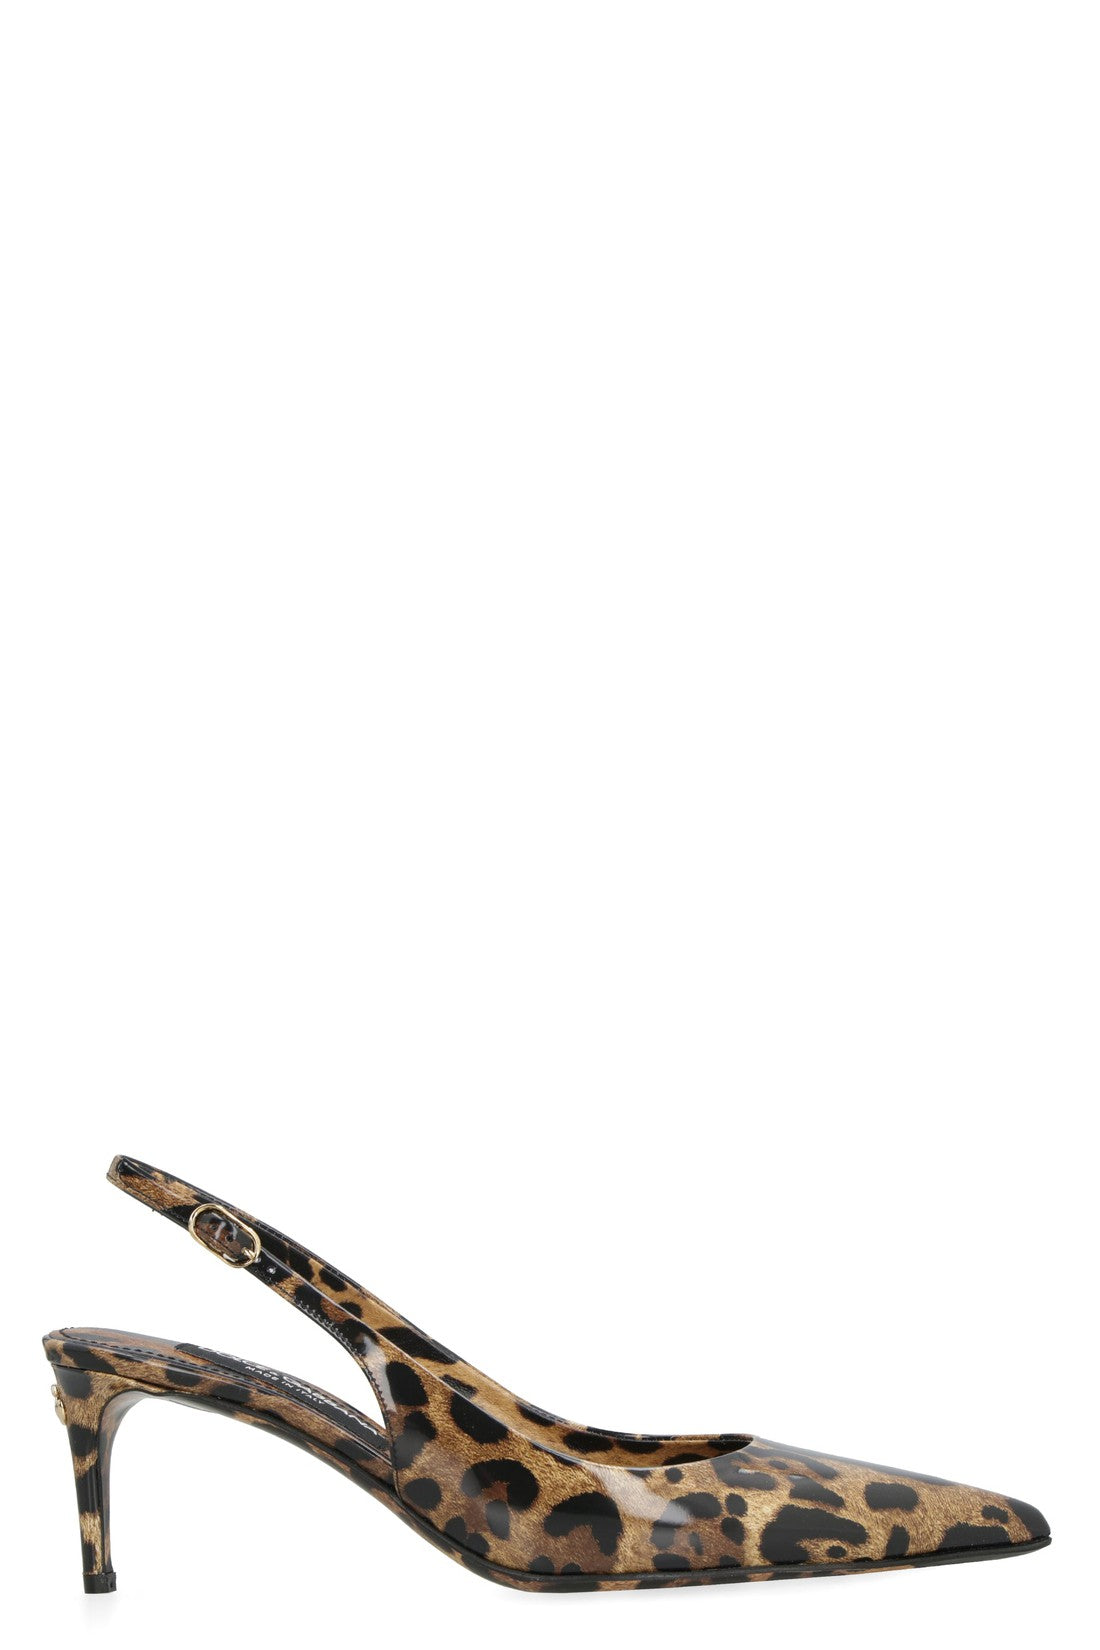 Dolce & Gabbana-OUTLET-SALE-Lollo leather slingback pumps-ARCHIVIST